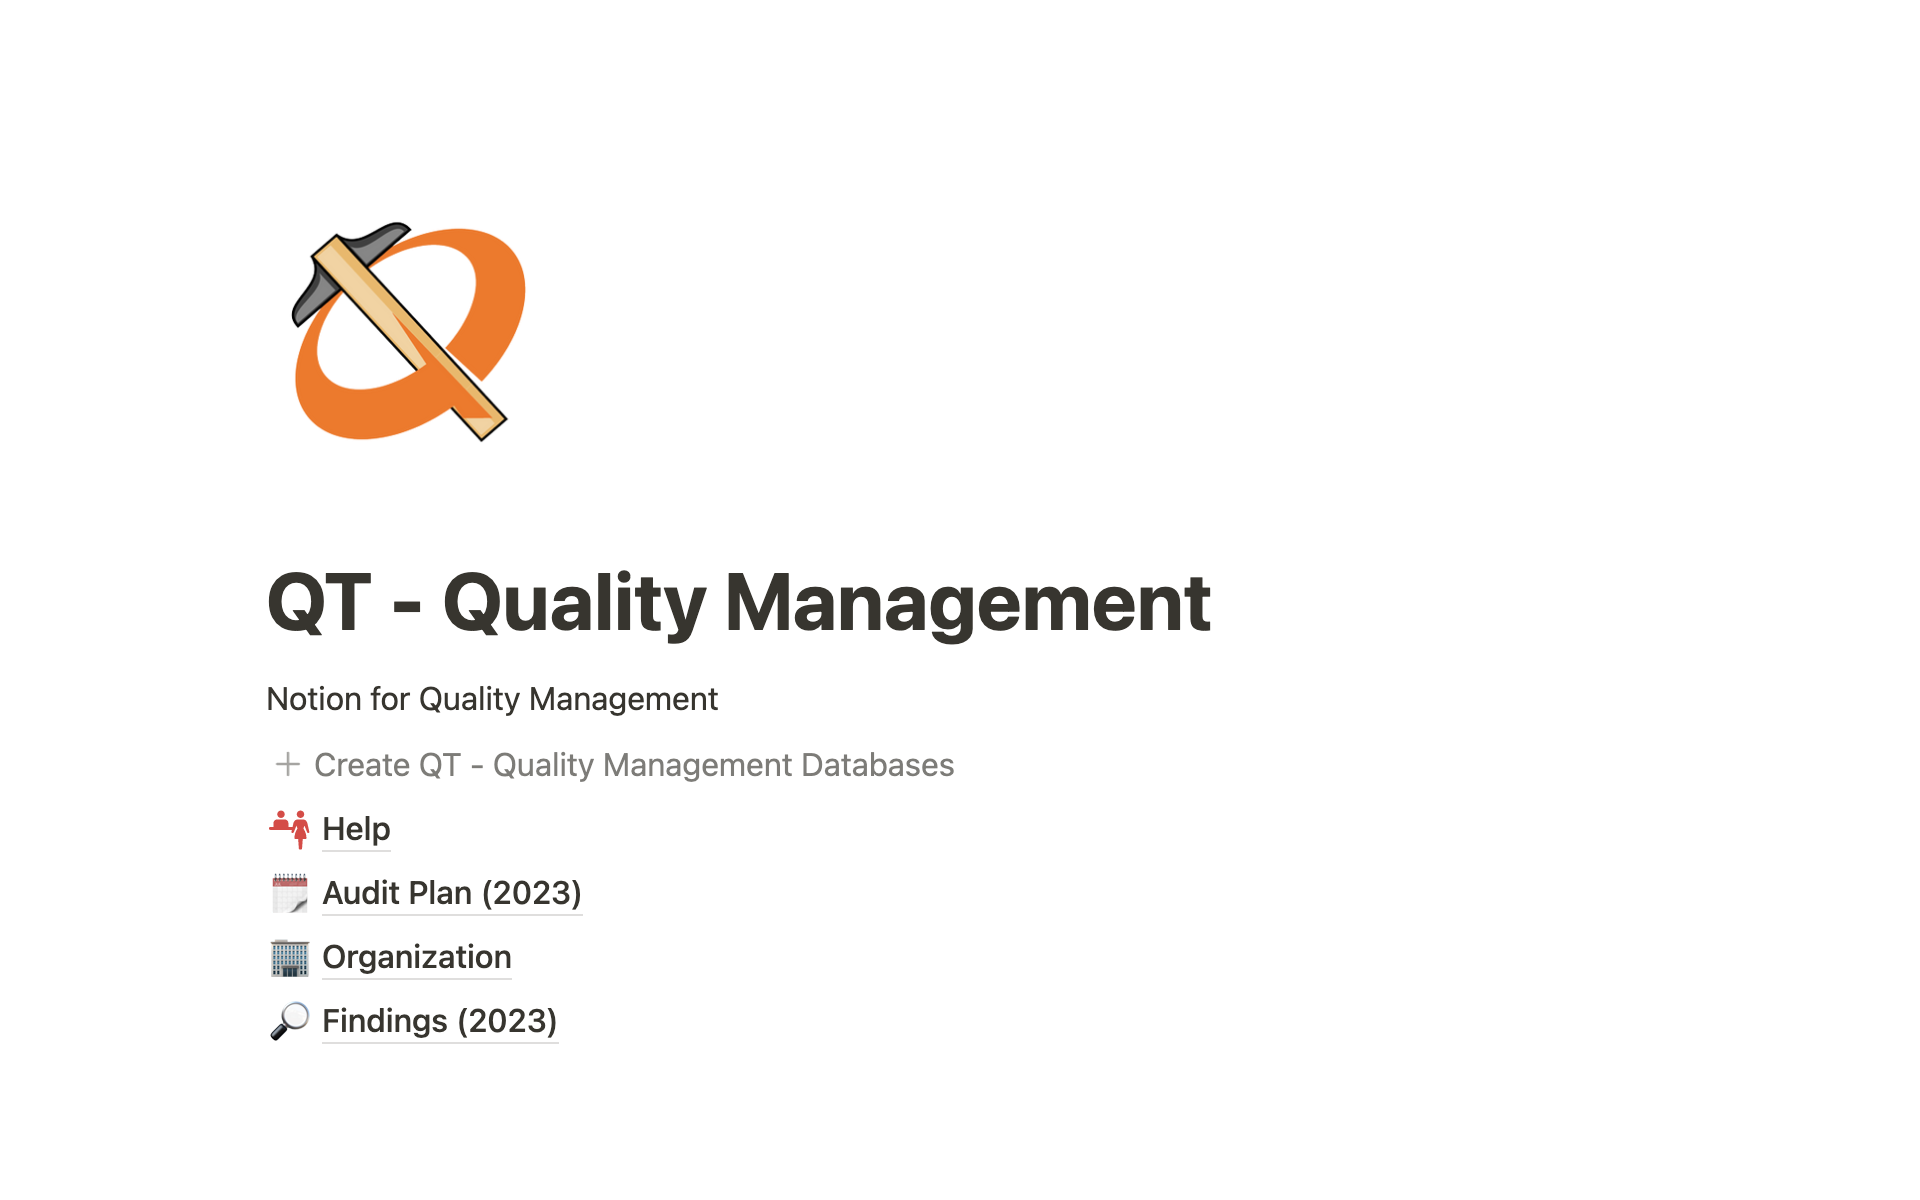 Aperçu du modèle de QT - Quality Management